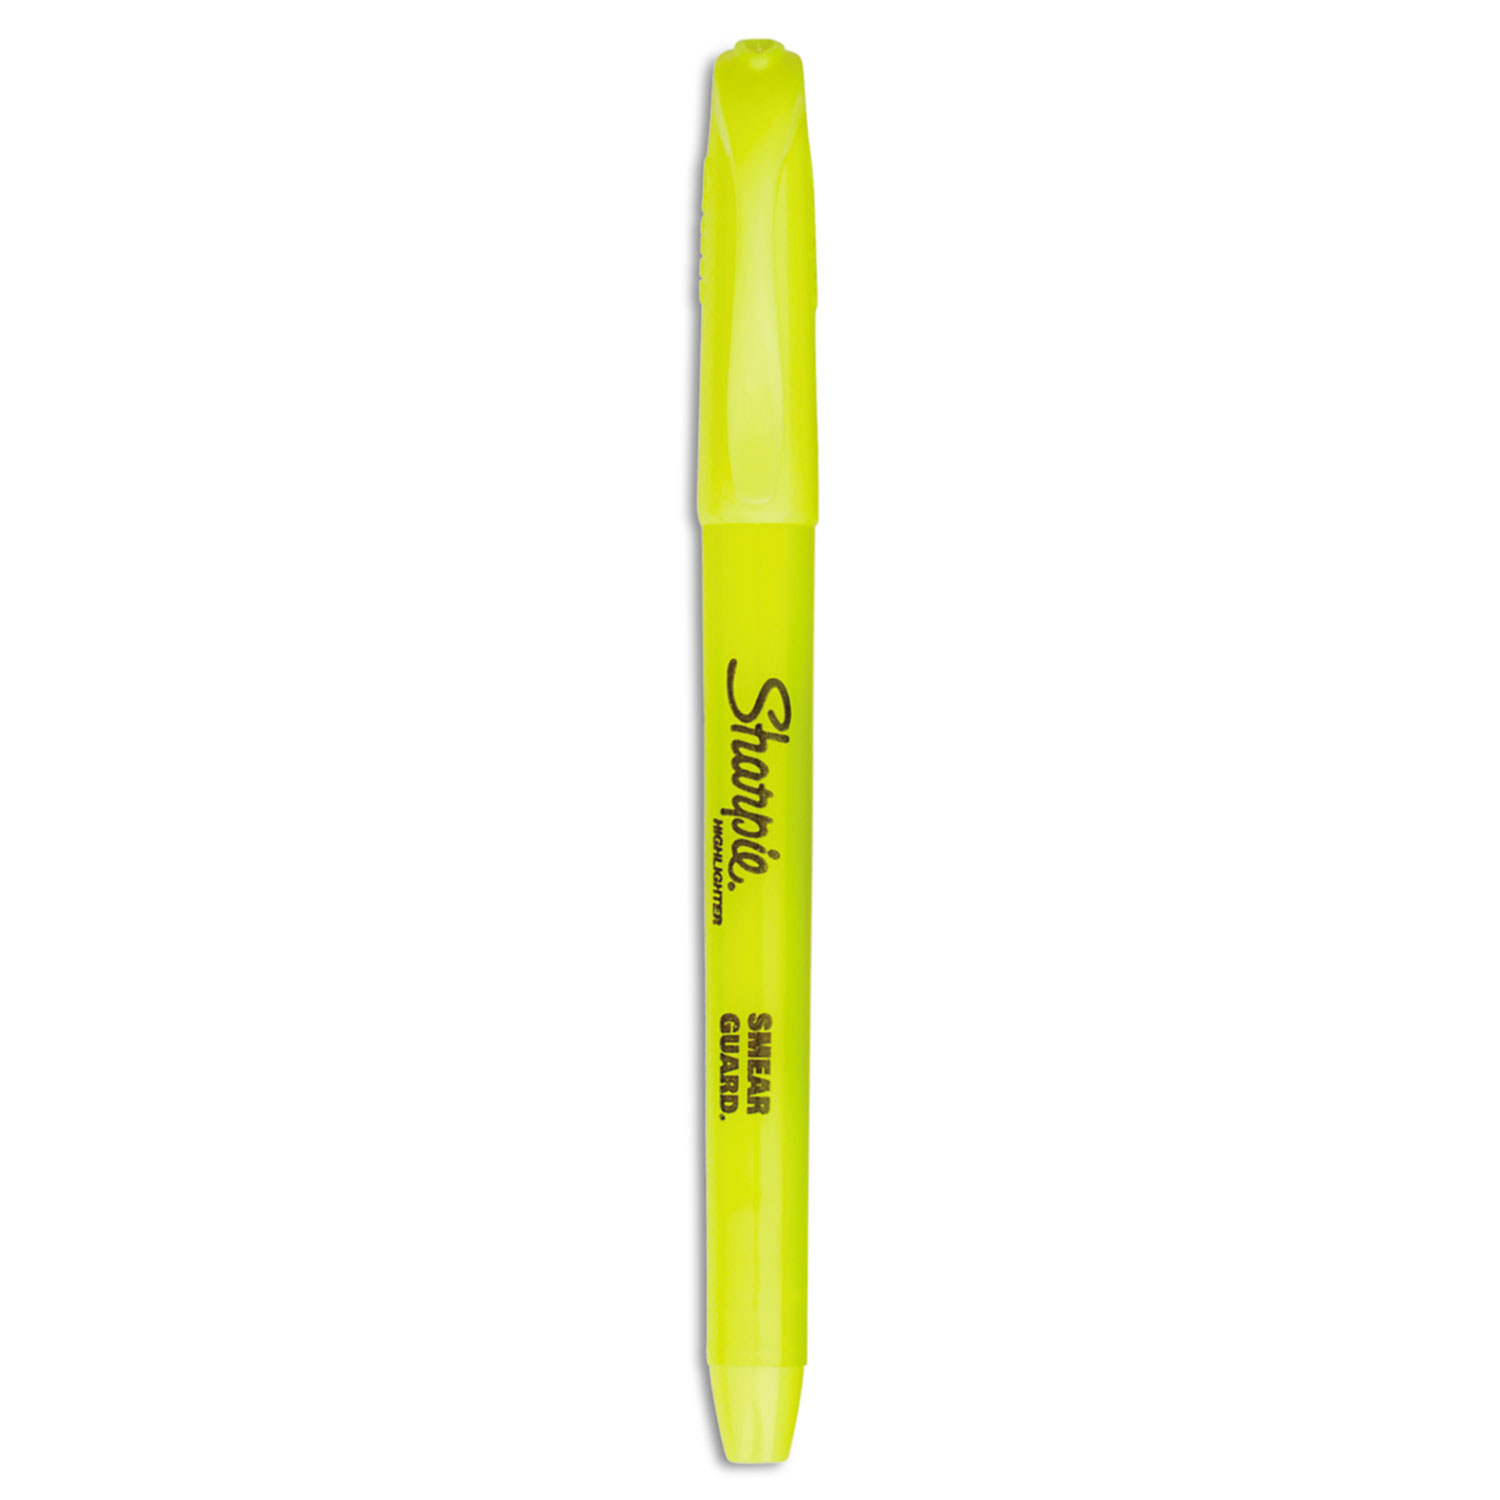 Sharpie S Note Chisel Tip Highlighter Marker 12/Pkg-Assorted